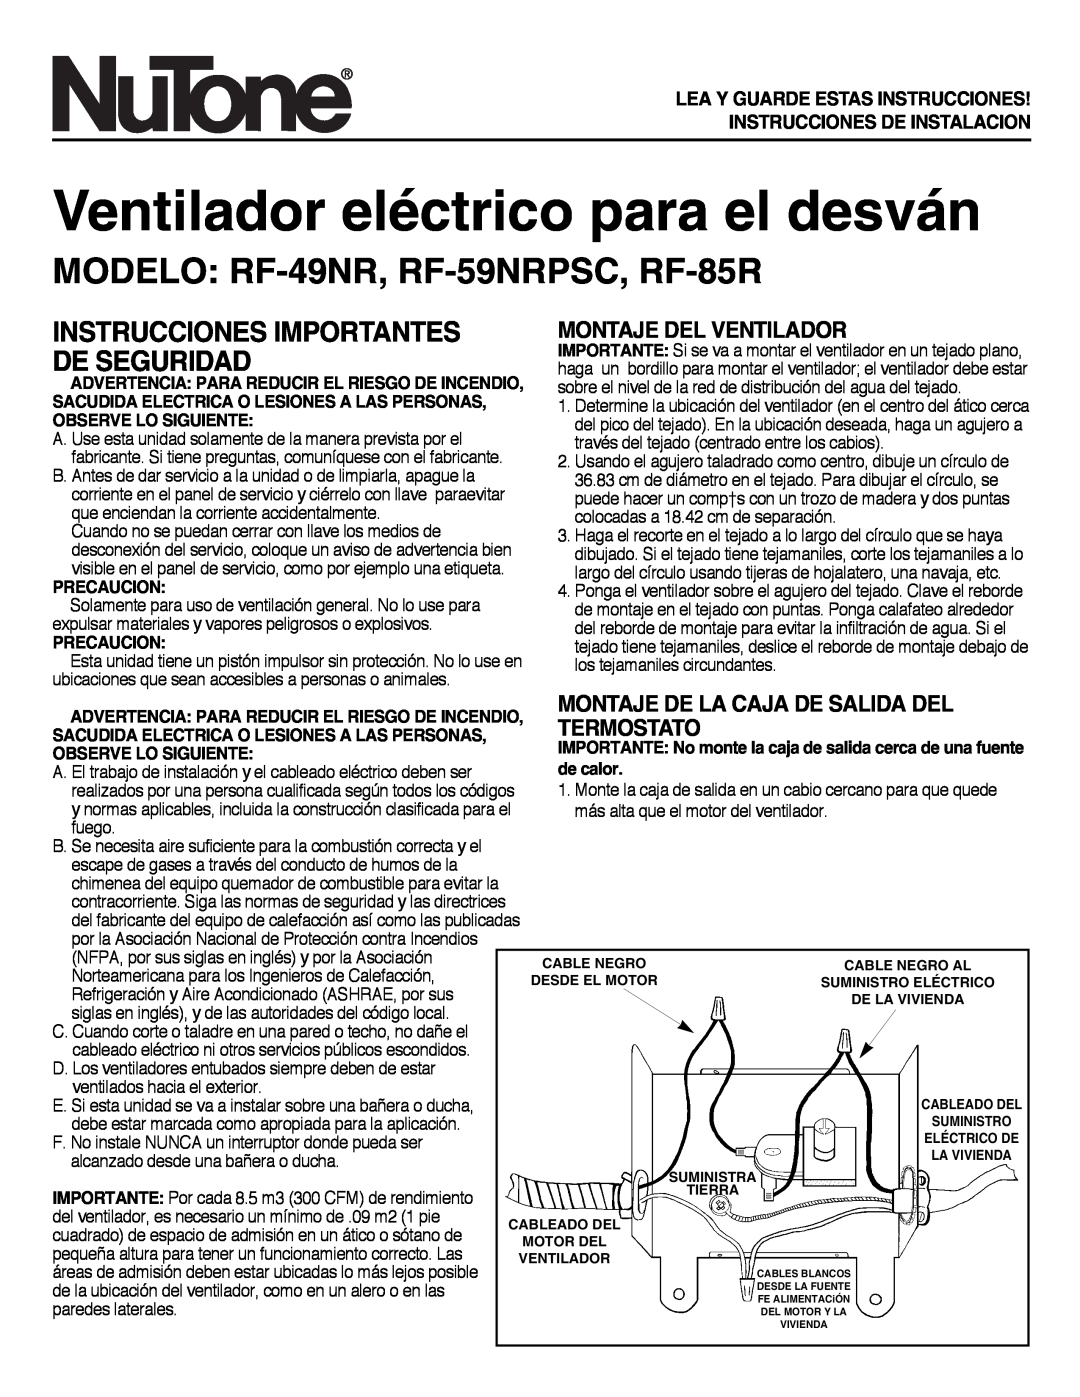 NuTone Ventilador eléctrico para el desván, MODELO RF-49NR, RF-59NRPSC, RF-85R, Montaje Del Ventilador, Termostato 